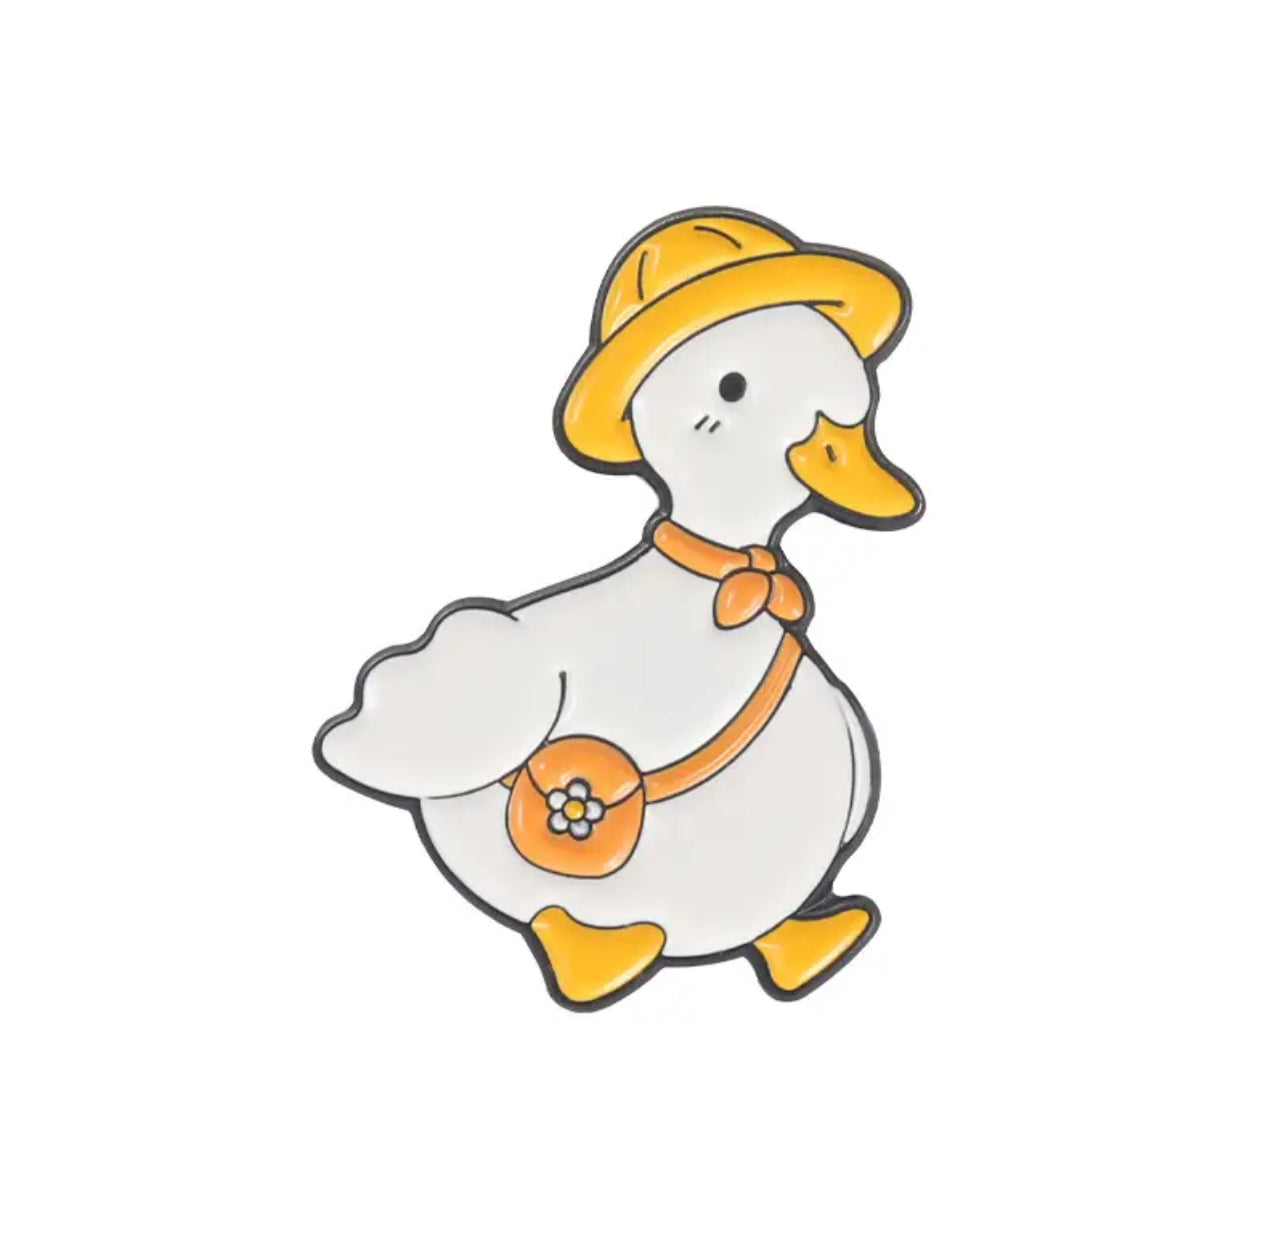 Elegant duck